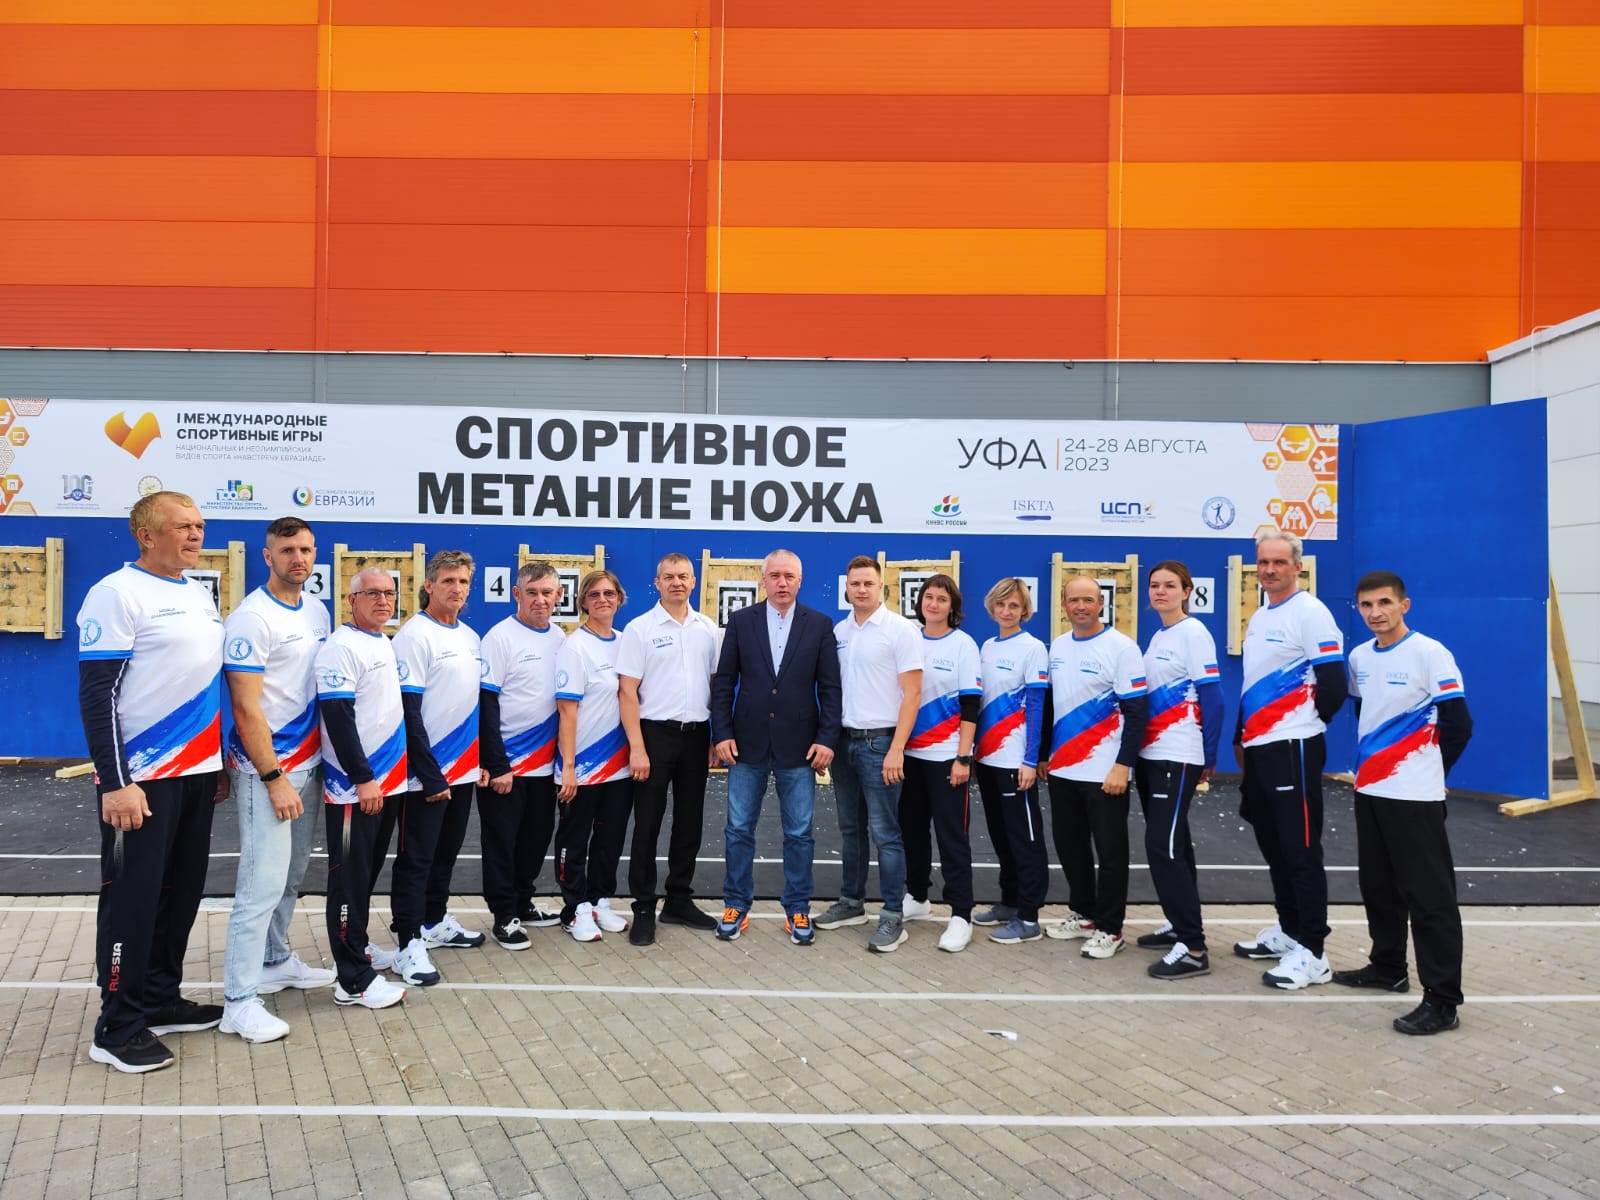 Россия, Беларусь и Монголия! Завершились международные соревнования по спортивному метанию ножа